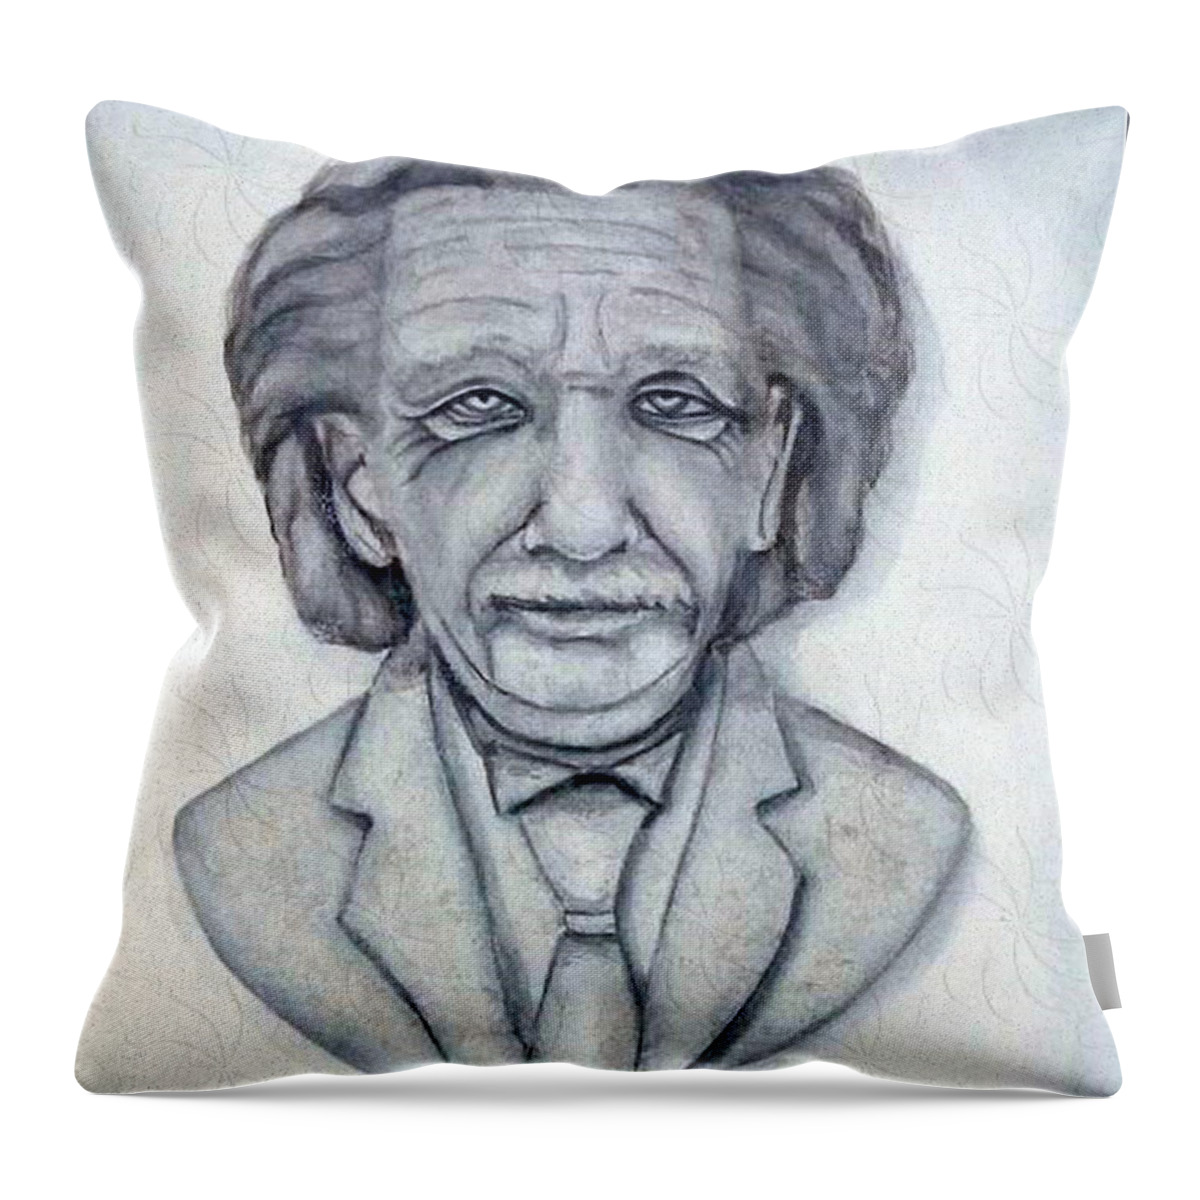 Albert Einstein Throw Pillow featuring the painting Albert Einstein Bust by Kelly Mills